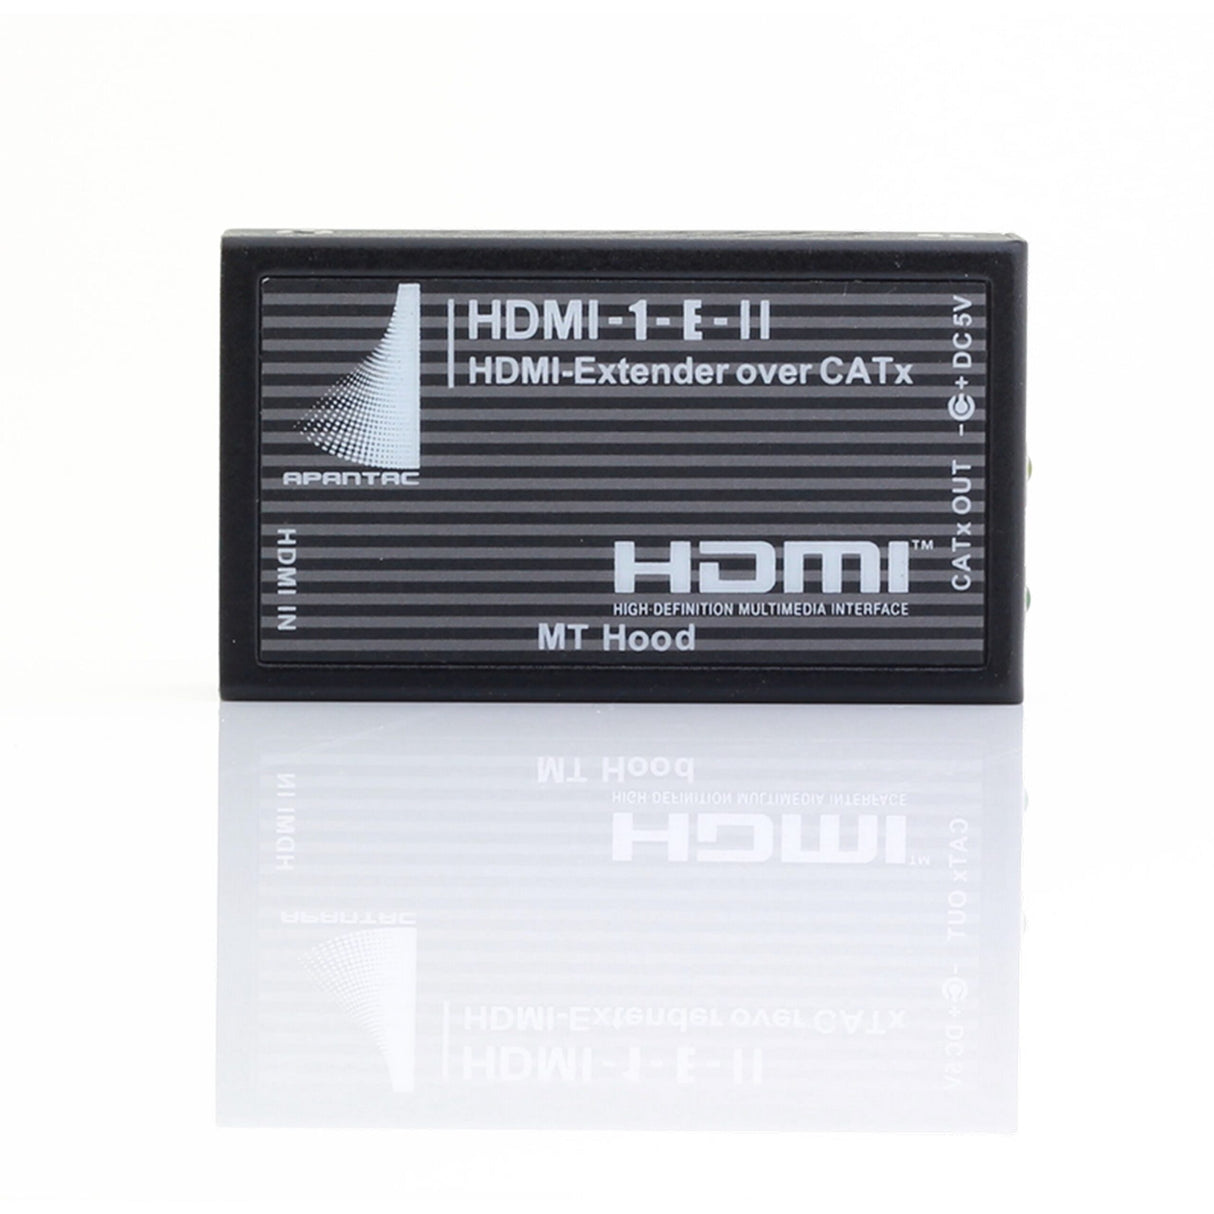 Apantac HDMI-1-E-II Enhanced HDMI Extender over CAT6